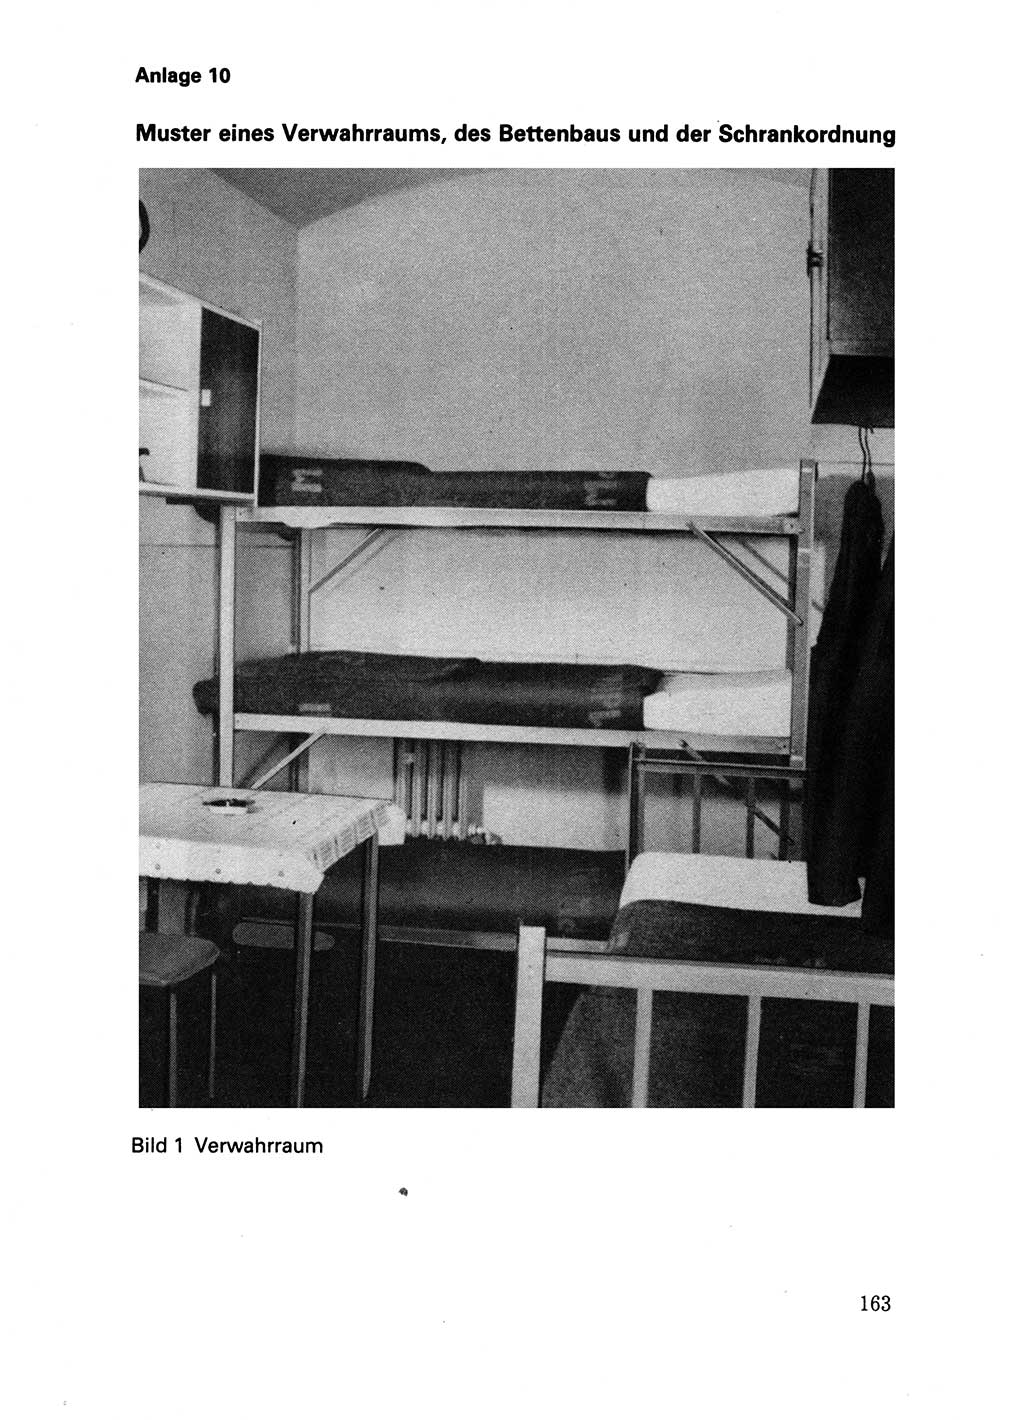 Handbuch fÃ¼r operative Dienste, Abteilung Strafvollzug (SV) [Ministerium des Innern (MdI) Deutsche Demokratische Republik (DDR)] 1981, Seite 163 (Hb. op. D. Abt. SV MdI DDR 1981, S. 163)